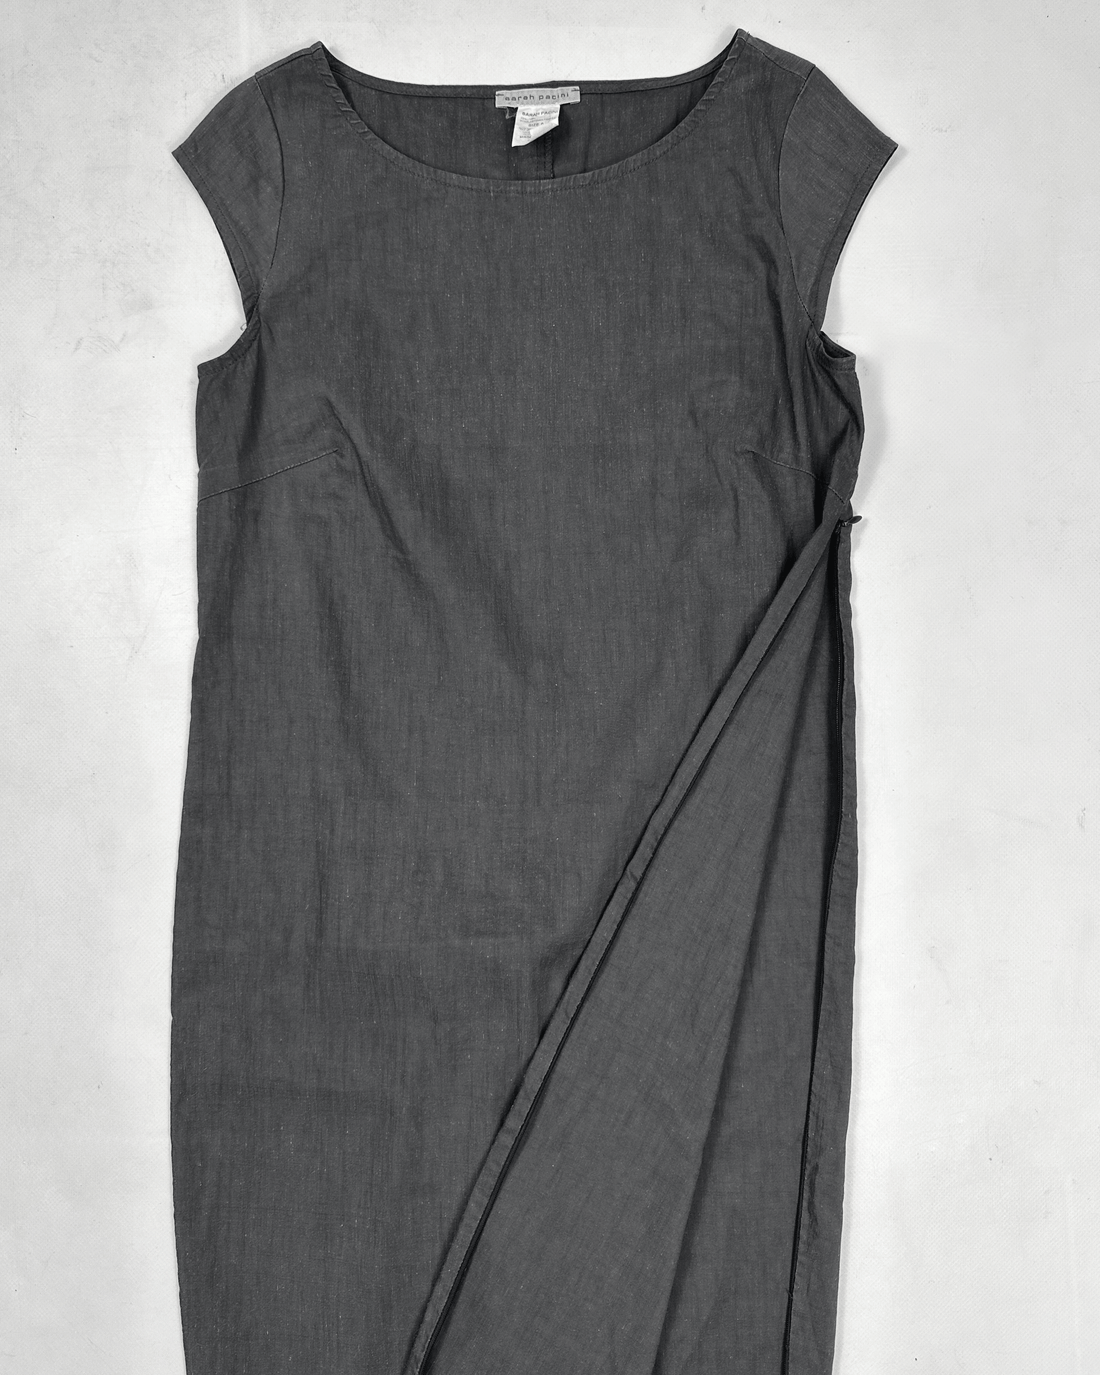 Sarah Paccini Dark Grey Zipped Dress 2000's